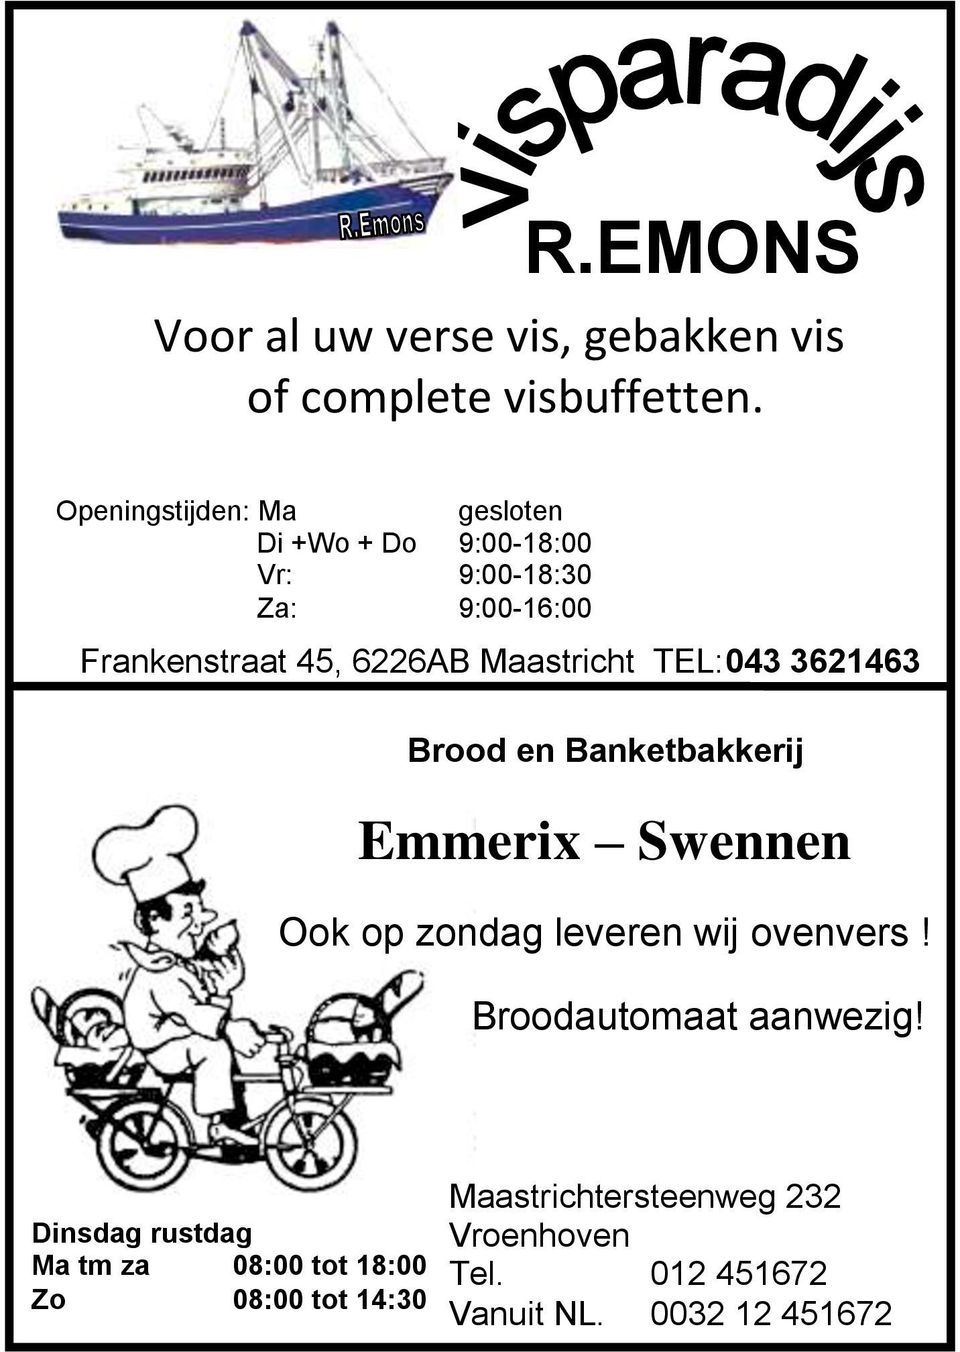 Maastricht TEL:043 3621463 Brood en Banketbakkerij Emmerix Swennen Ook op zondag leveren wij ovenvers!